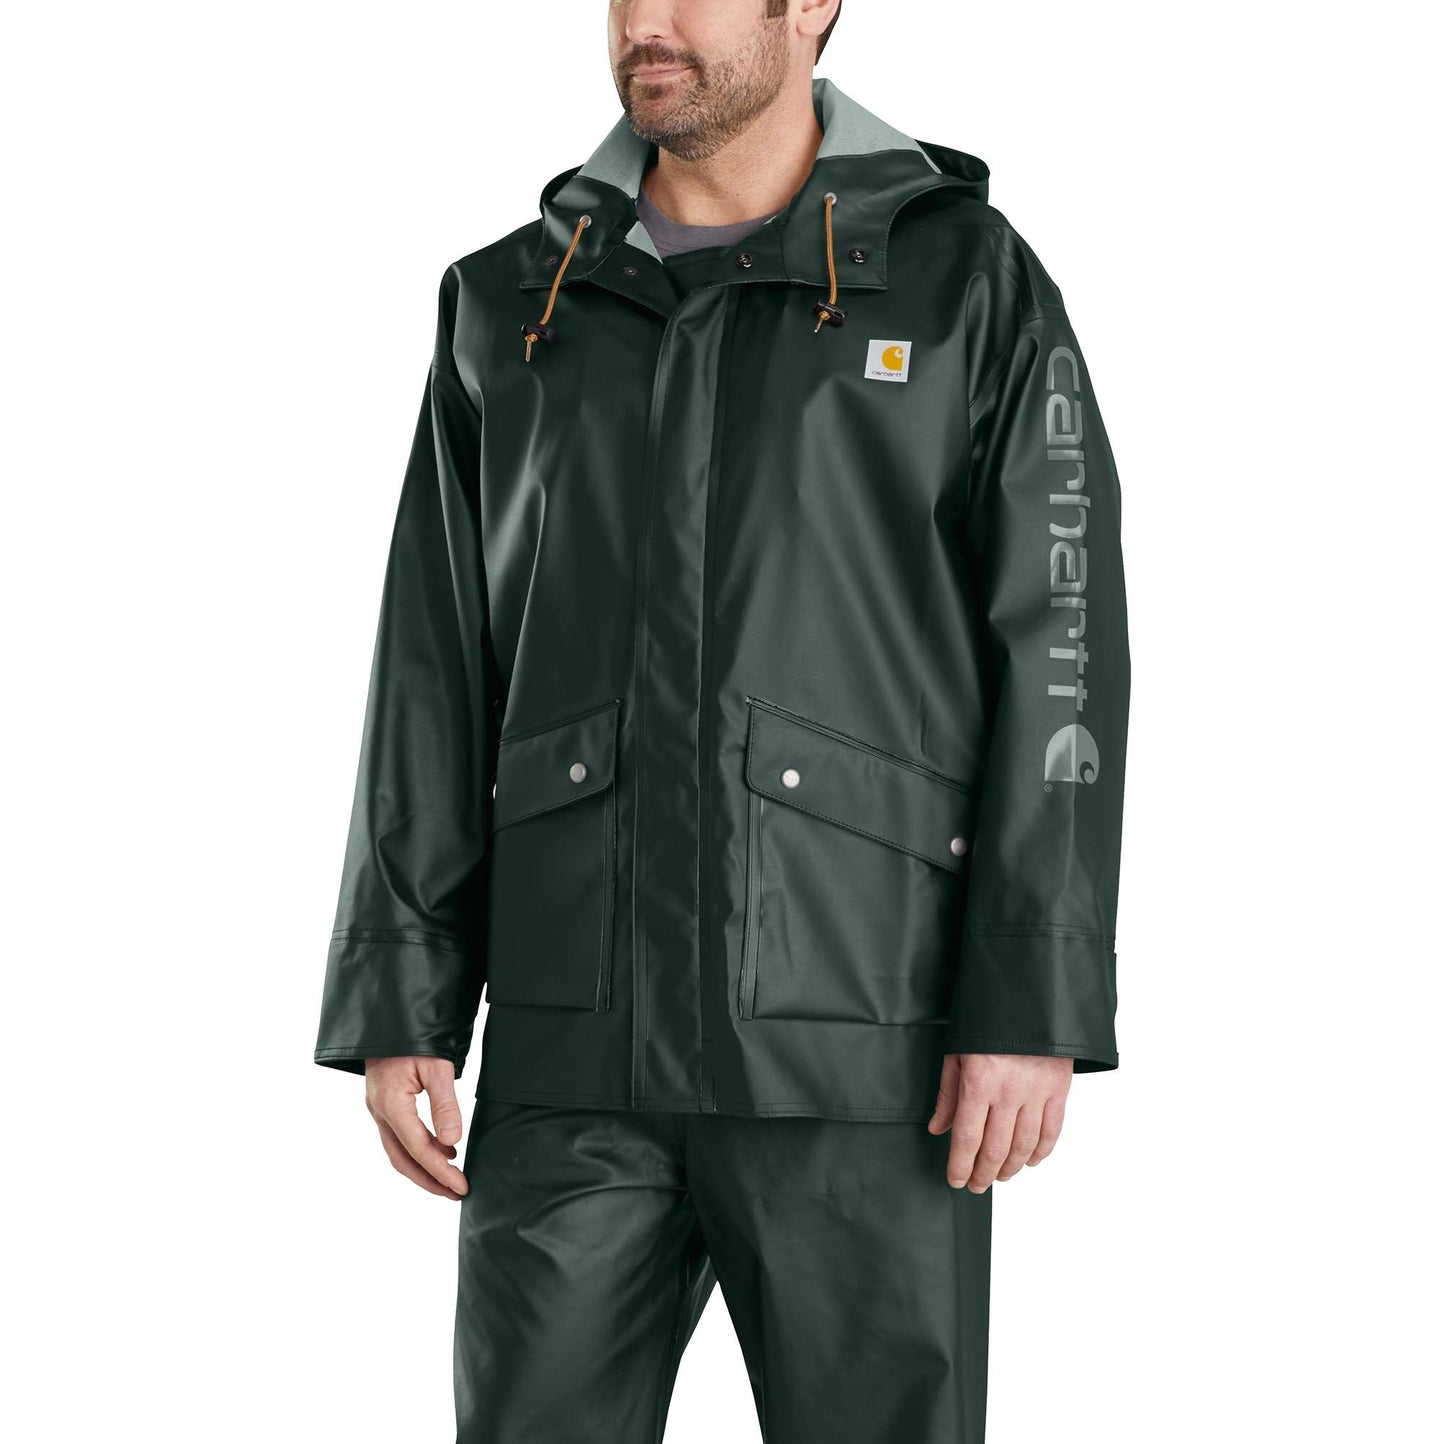 Midweight Waterproof Rainstorm Jacket